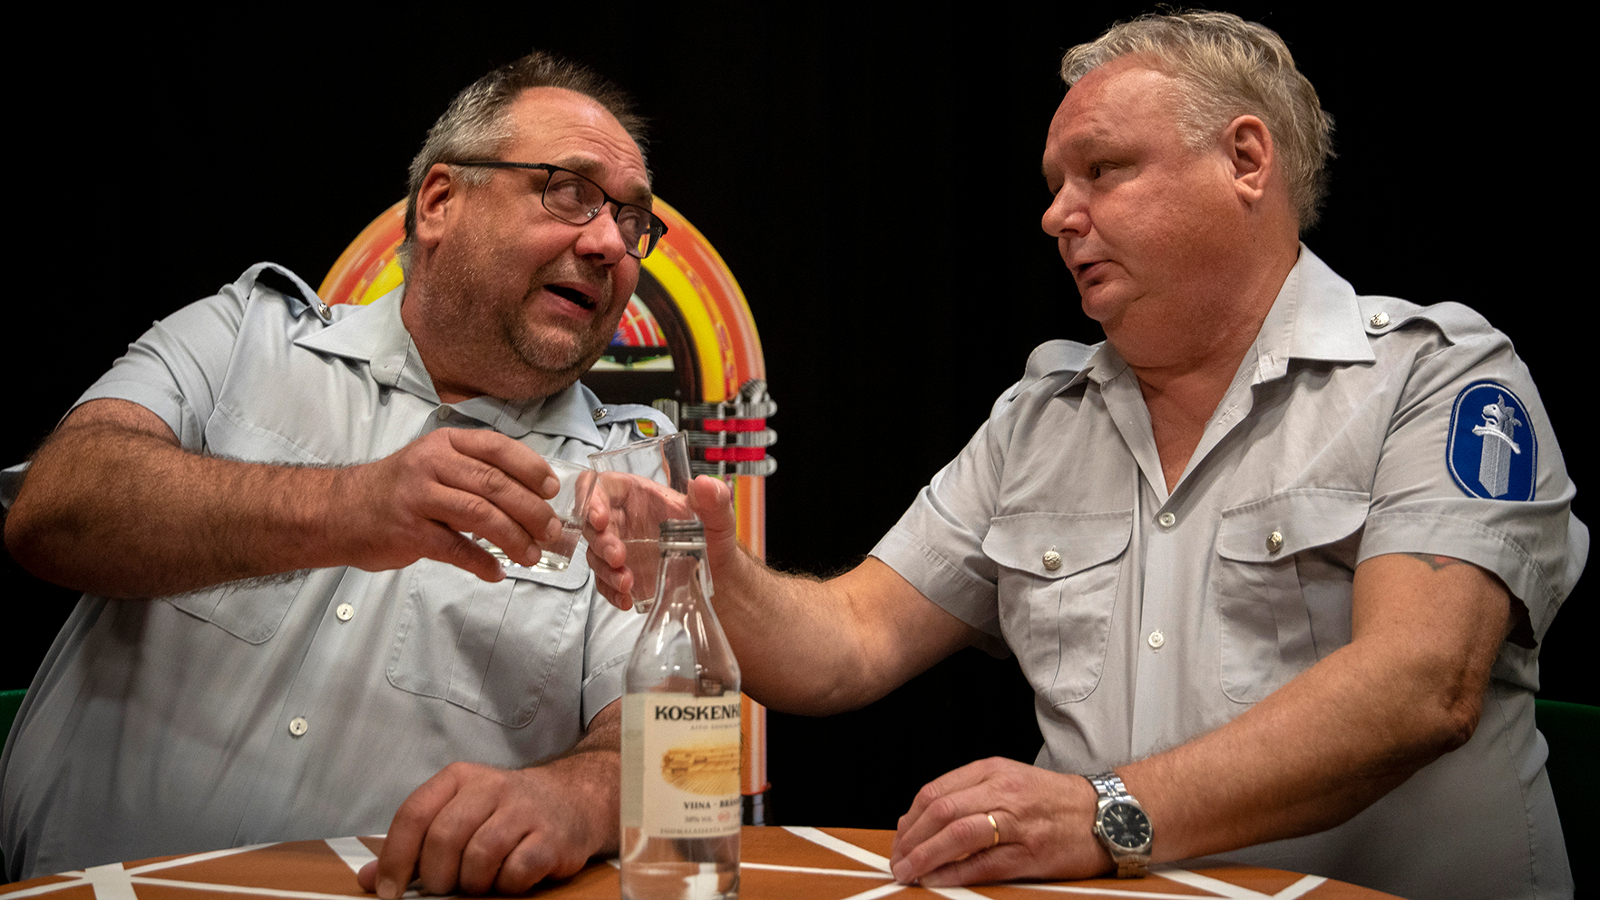 Kuvassa ovat poliisiasuissa Pasi Taavitsainen ja Markku Heino kahvipöydässä juttelemassa.